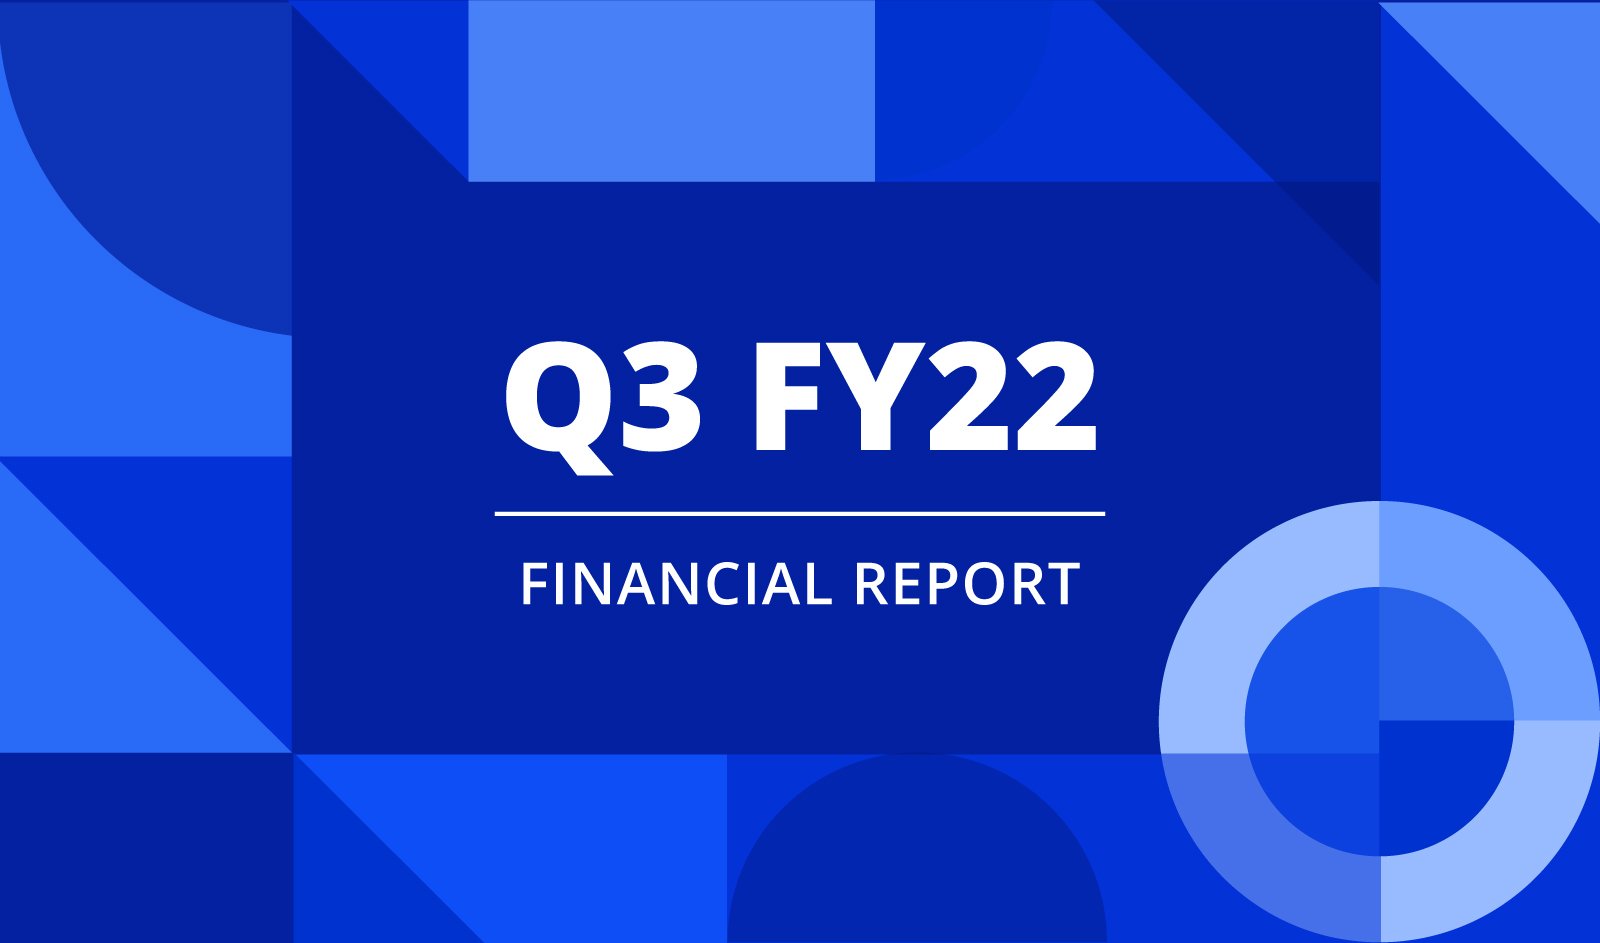 PR_Q3FY22 Financial report_Banner_v02